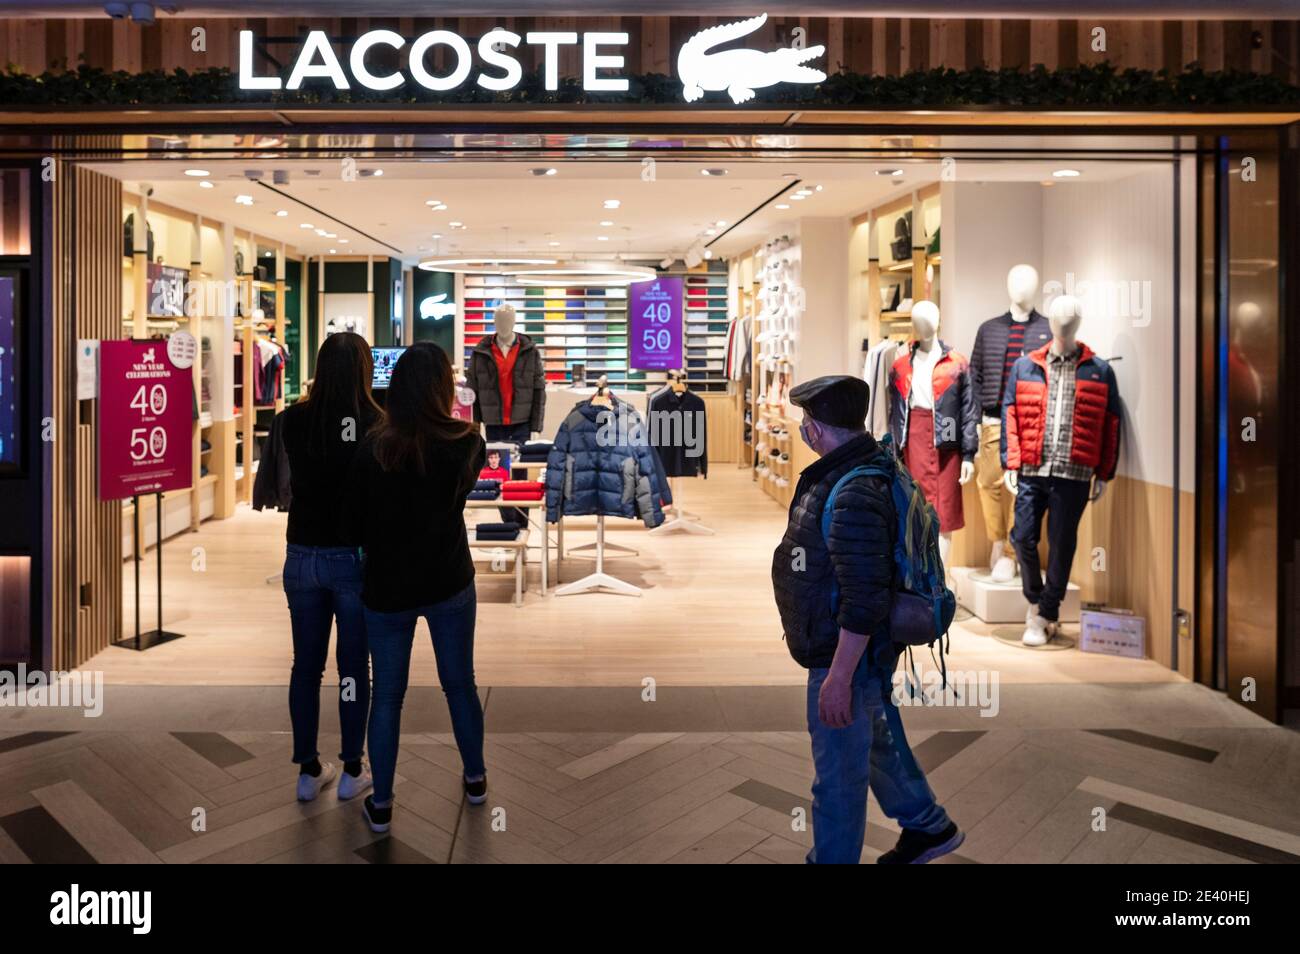 Marque de vêtements française Lacoste magasin et logo vu à Hong Kong Photo  Stock - Alamy